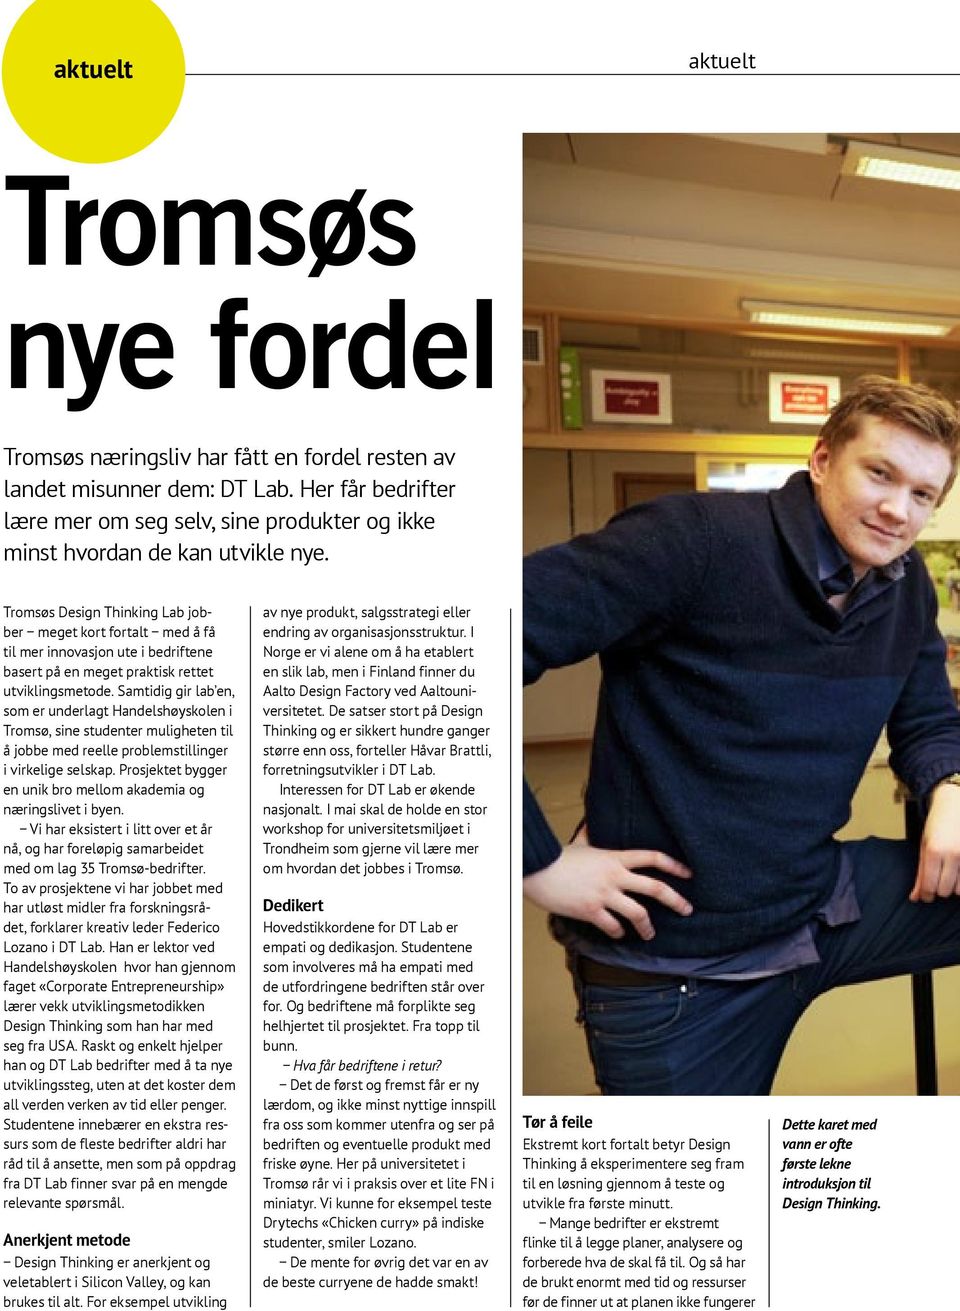 Tromsøs Design Thinking Lab jobber meget kort fortalt med å få til mer innovasjon ute i bedriftene basert på en meget praktisk rettet utviklingsmetode.